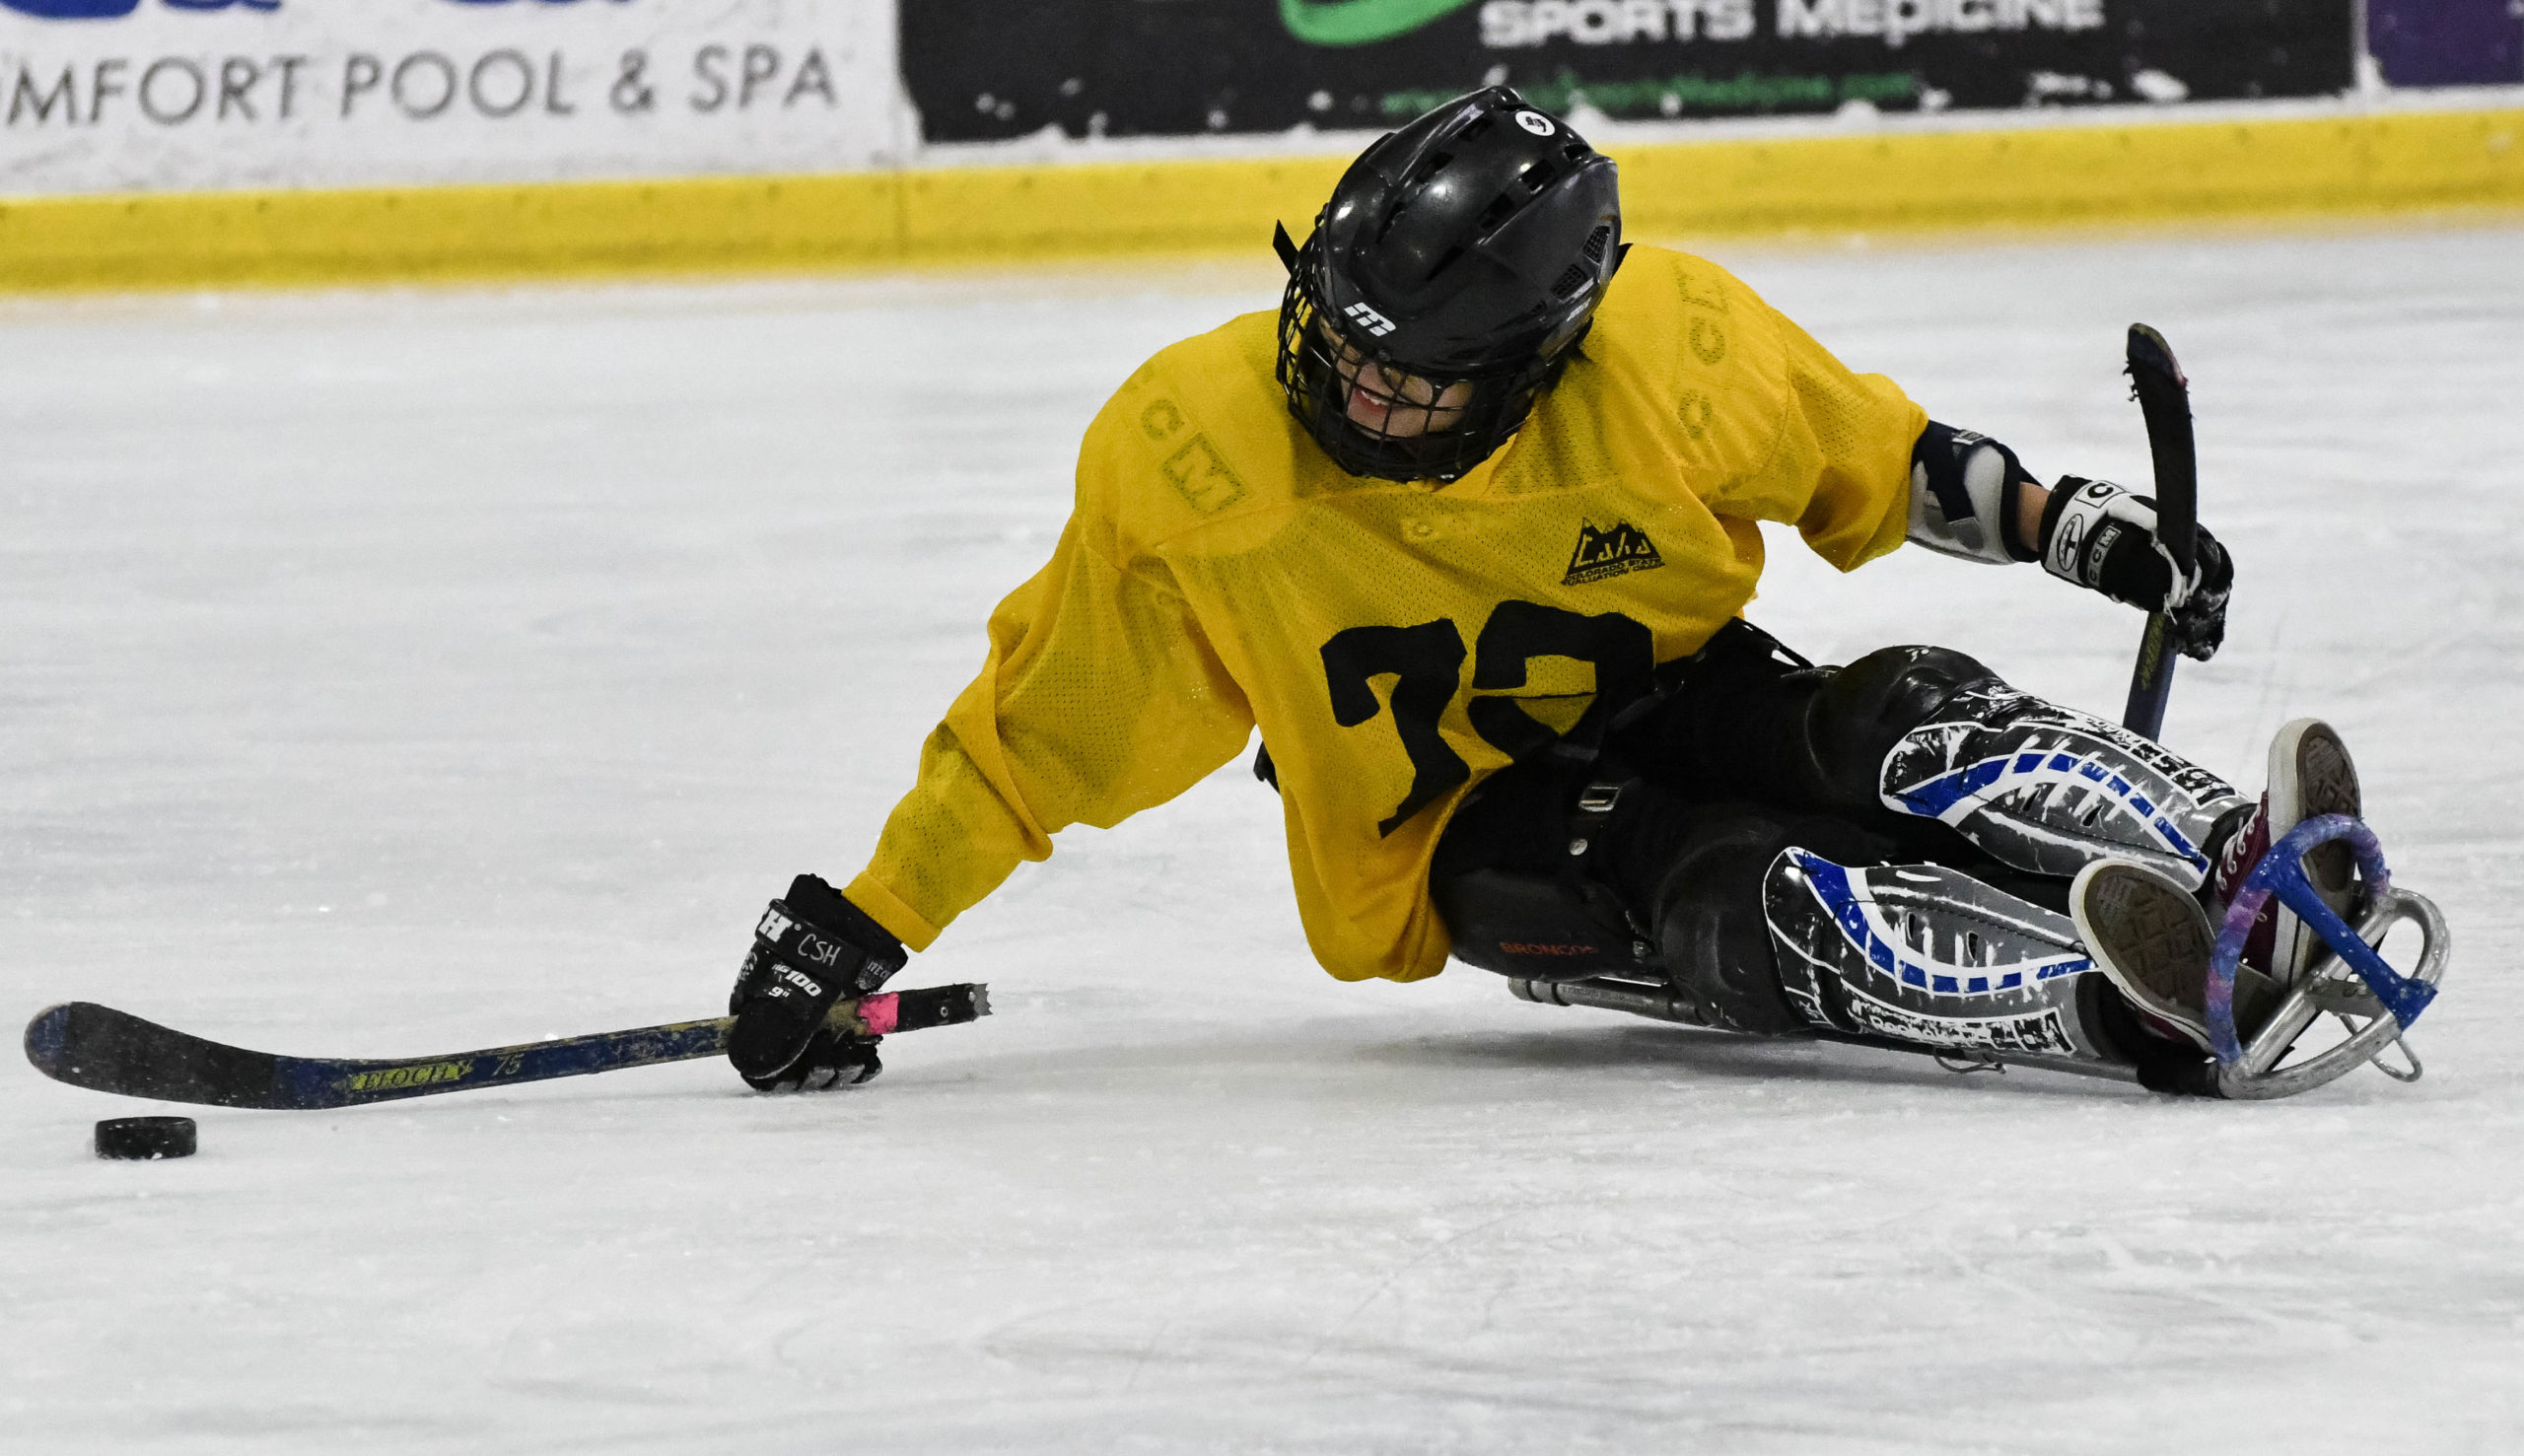 Sled hockey athlete on ice